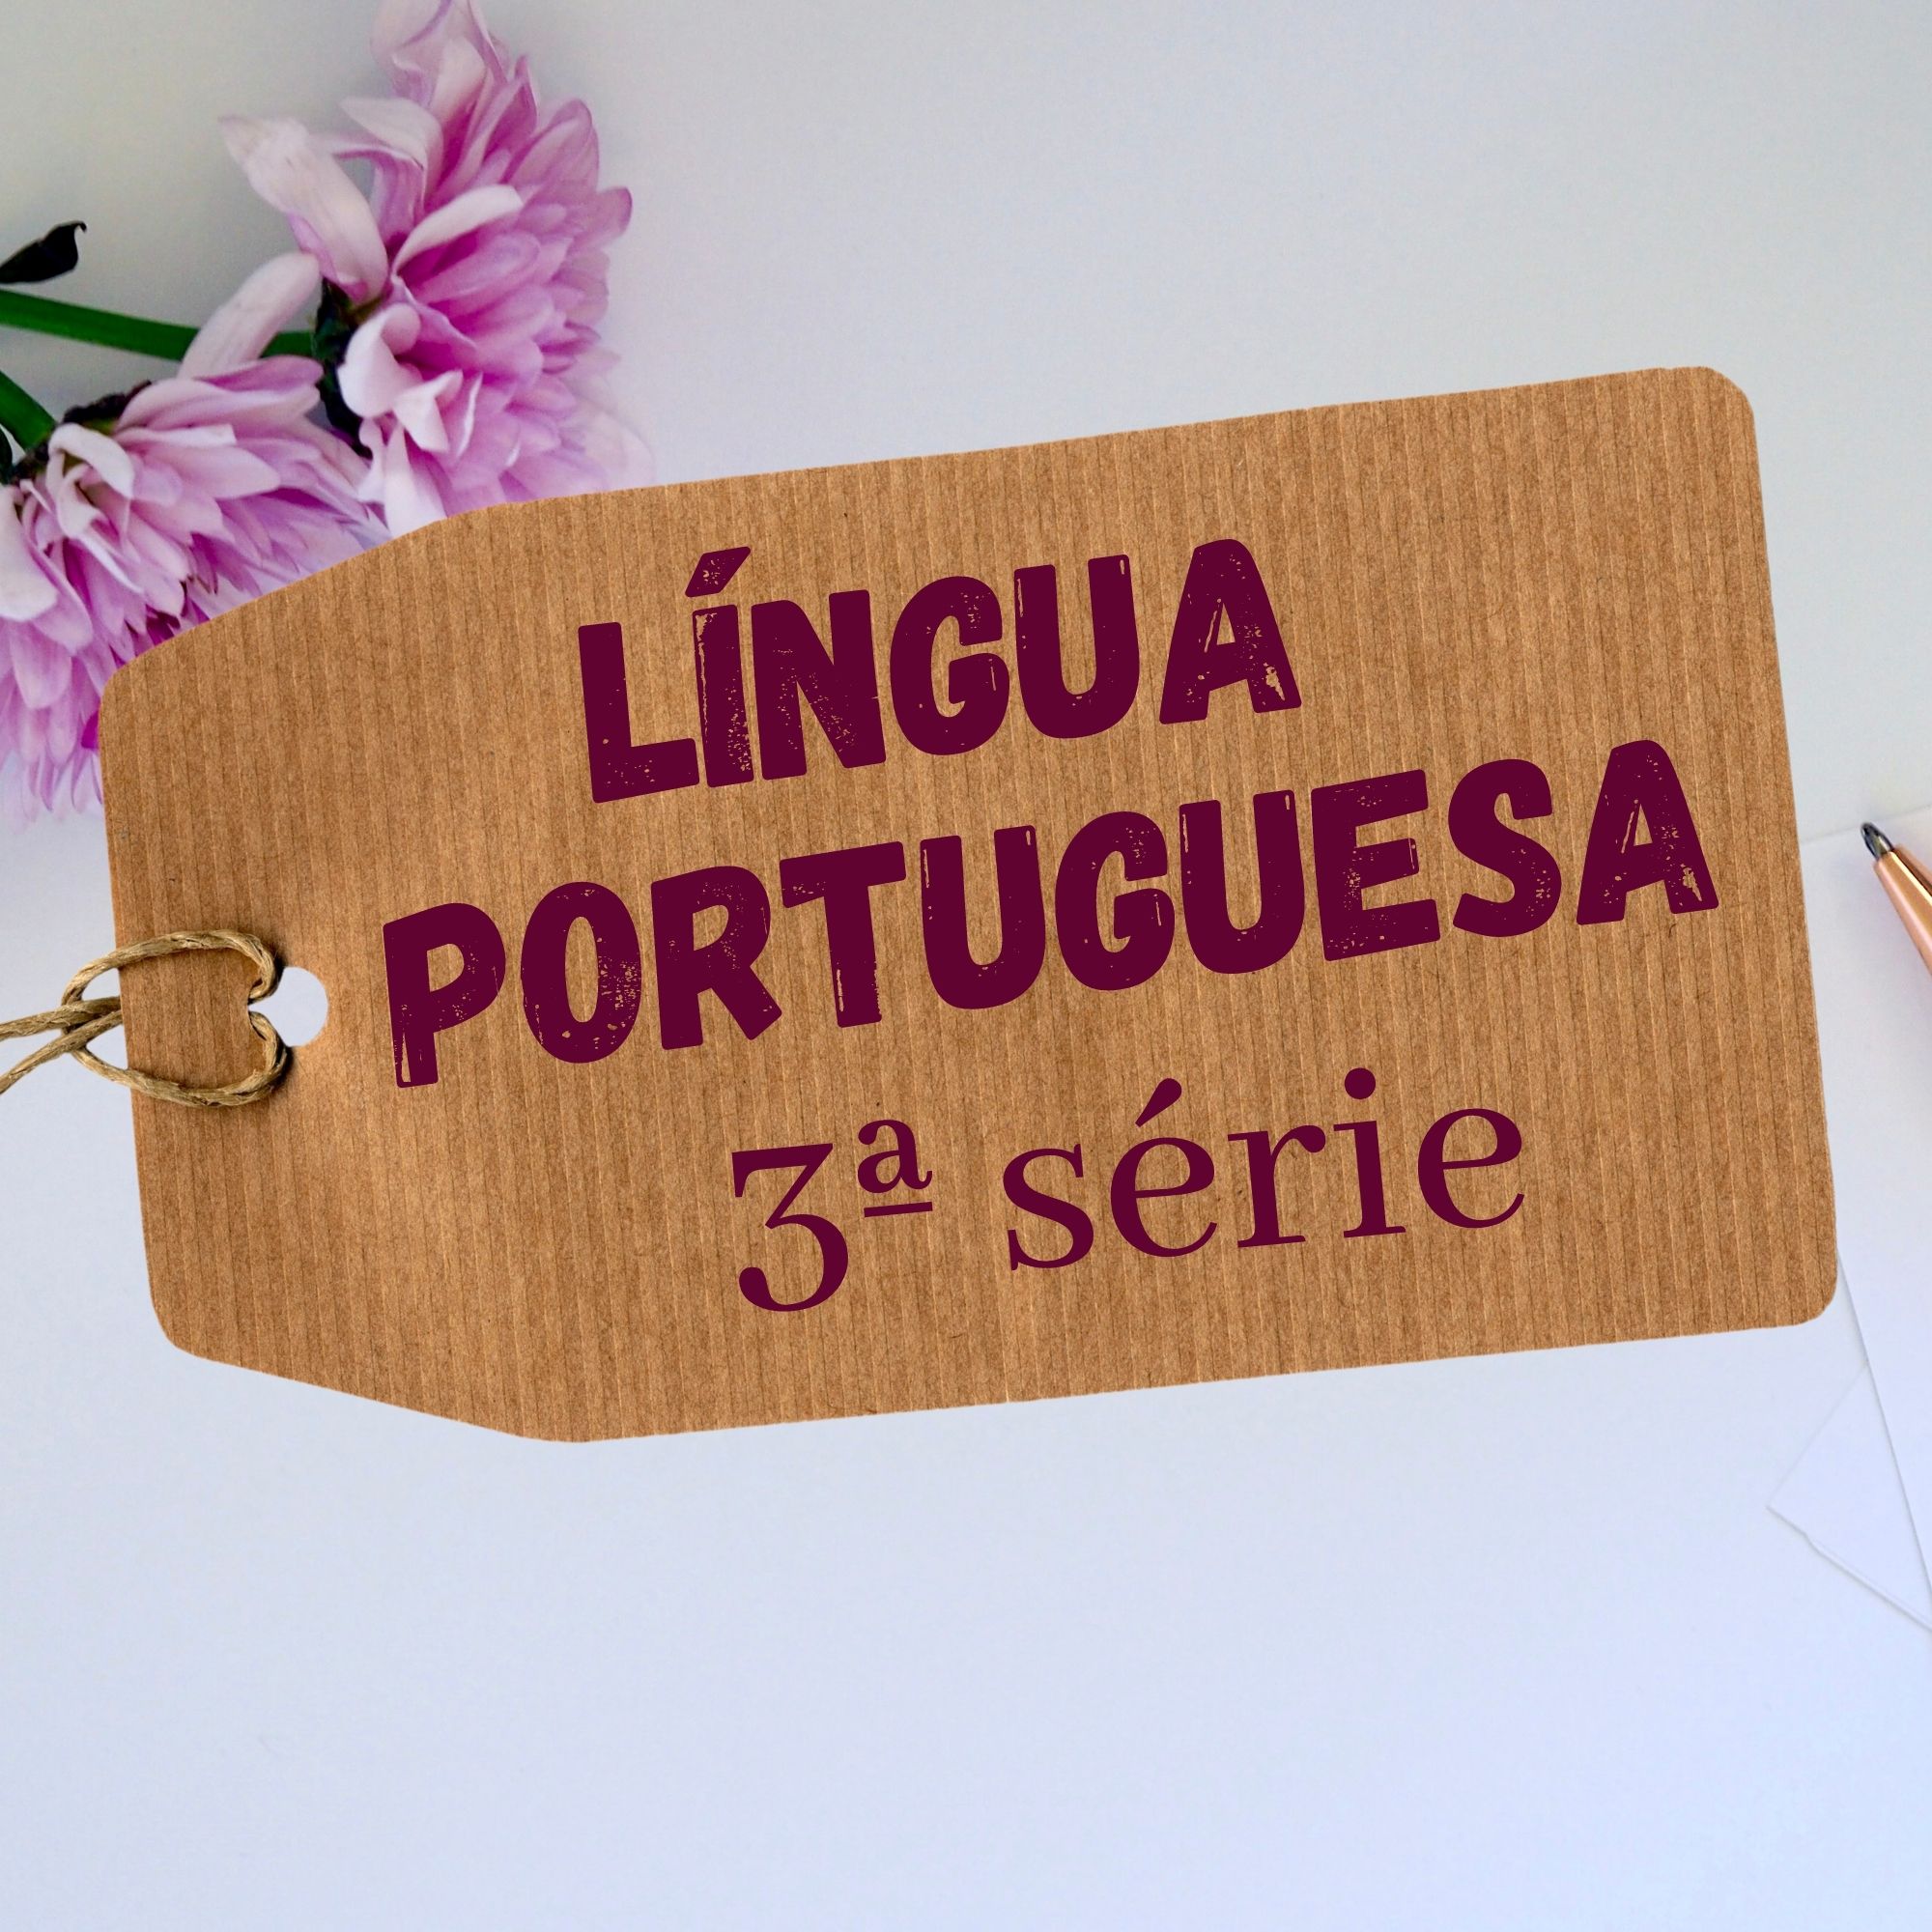 Read more about the article Propostas didáticas – Língua Portuguesa – EJA – 3ª série